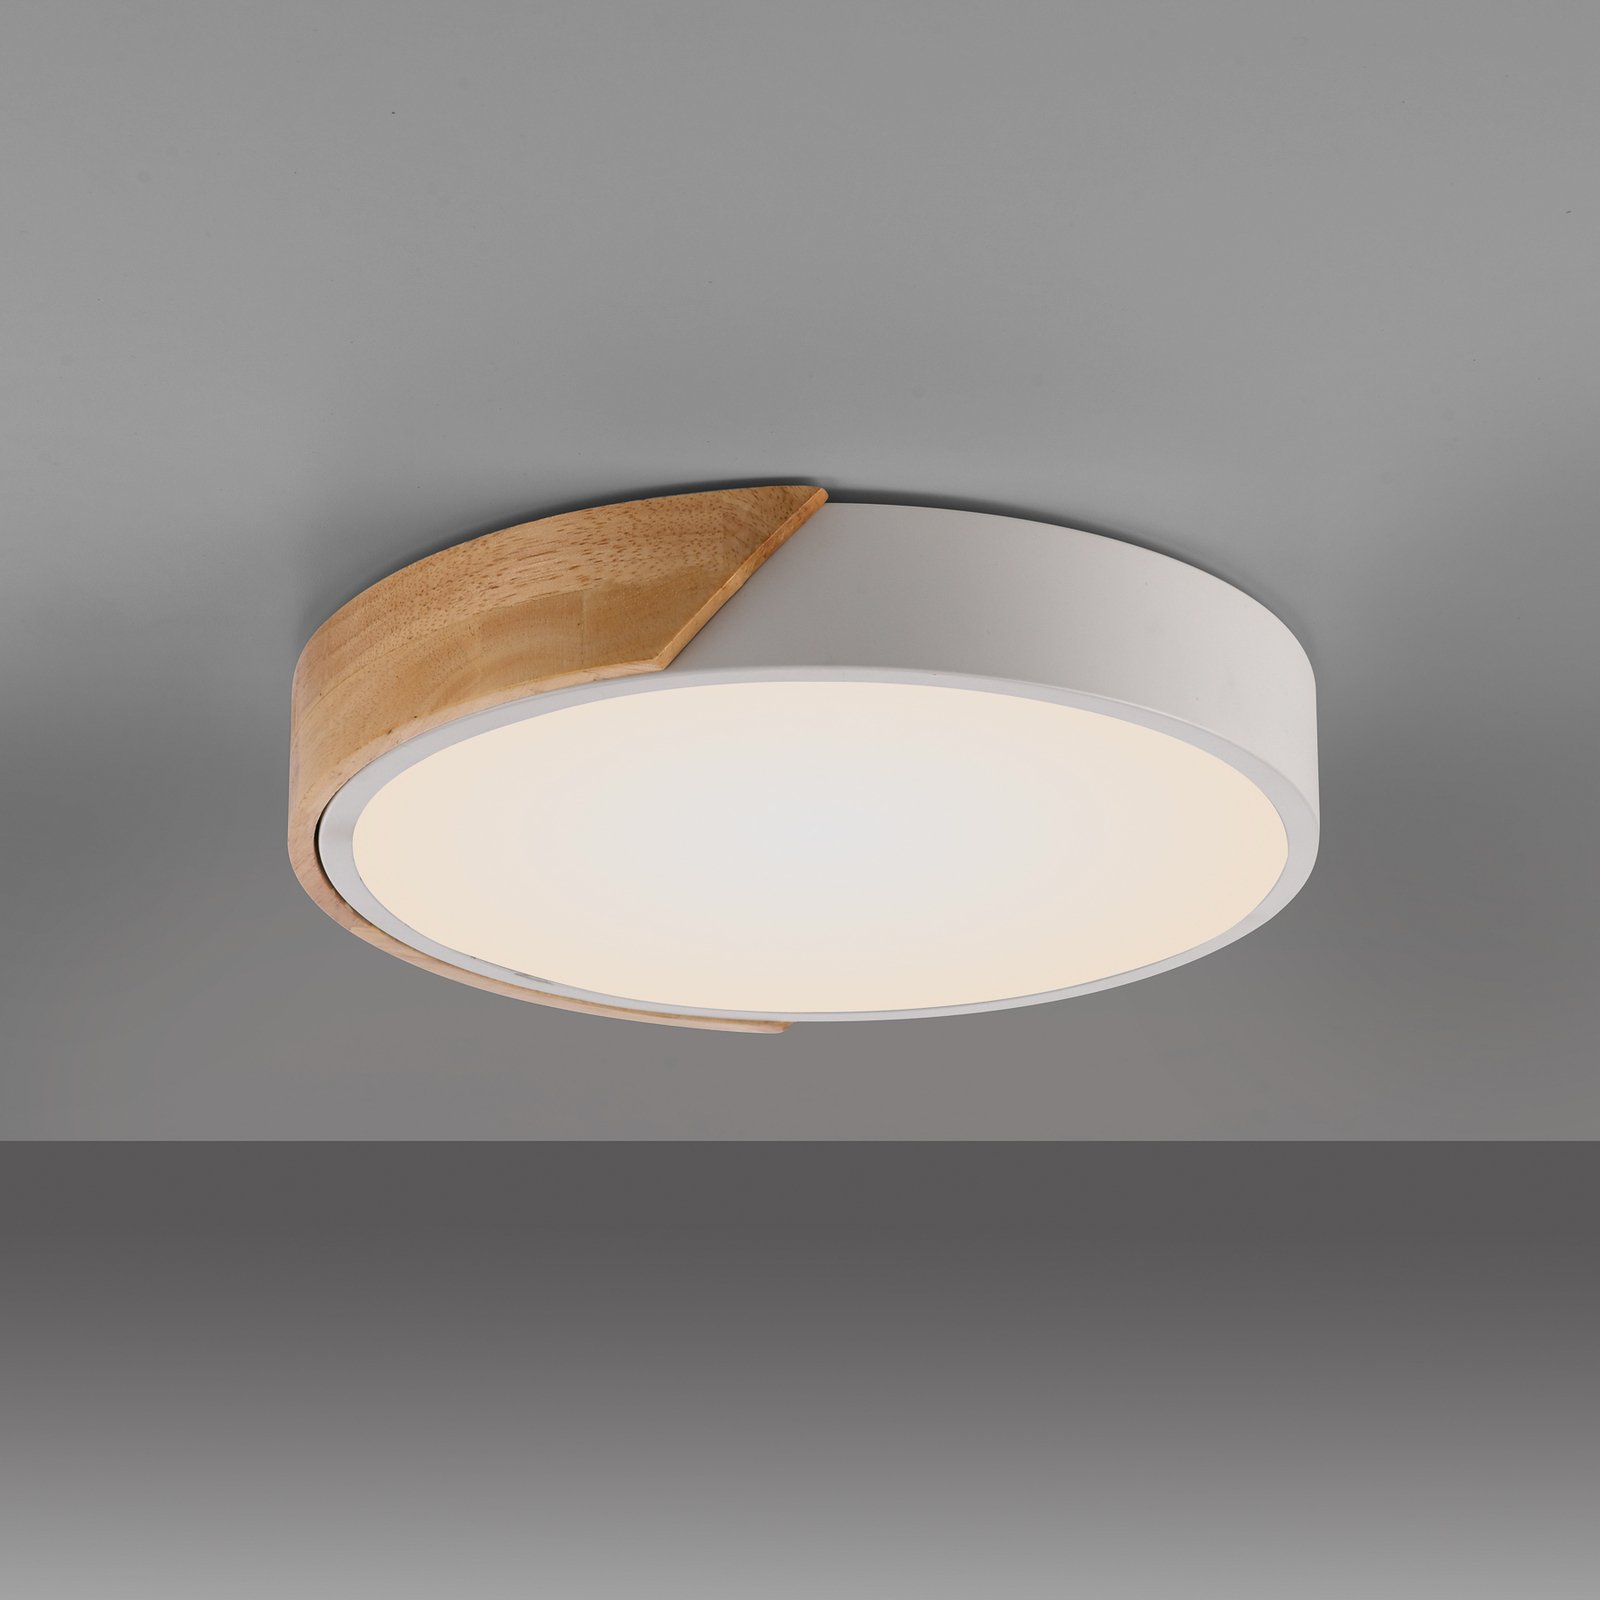 JUST LIGHT. Bila LED ceiling light, white, Ø 32 cm, wood